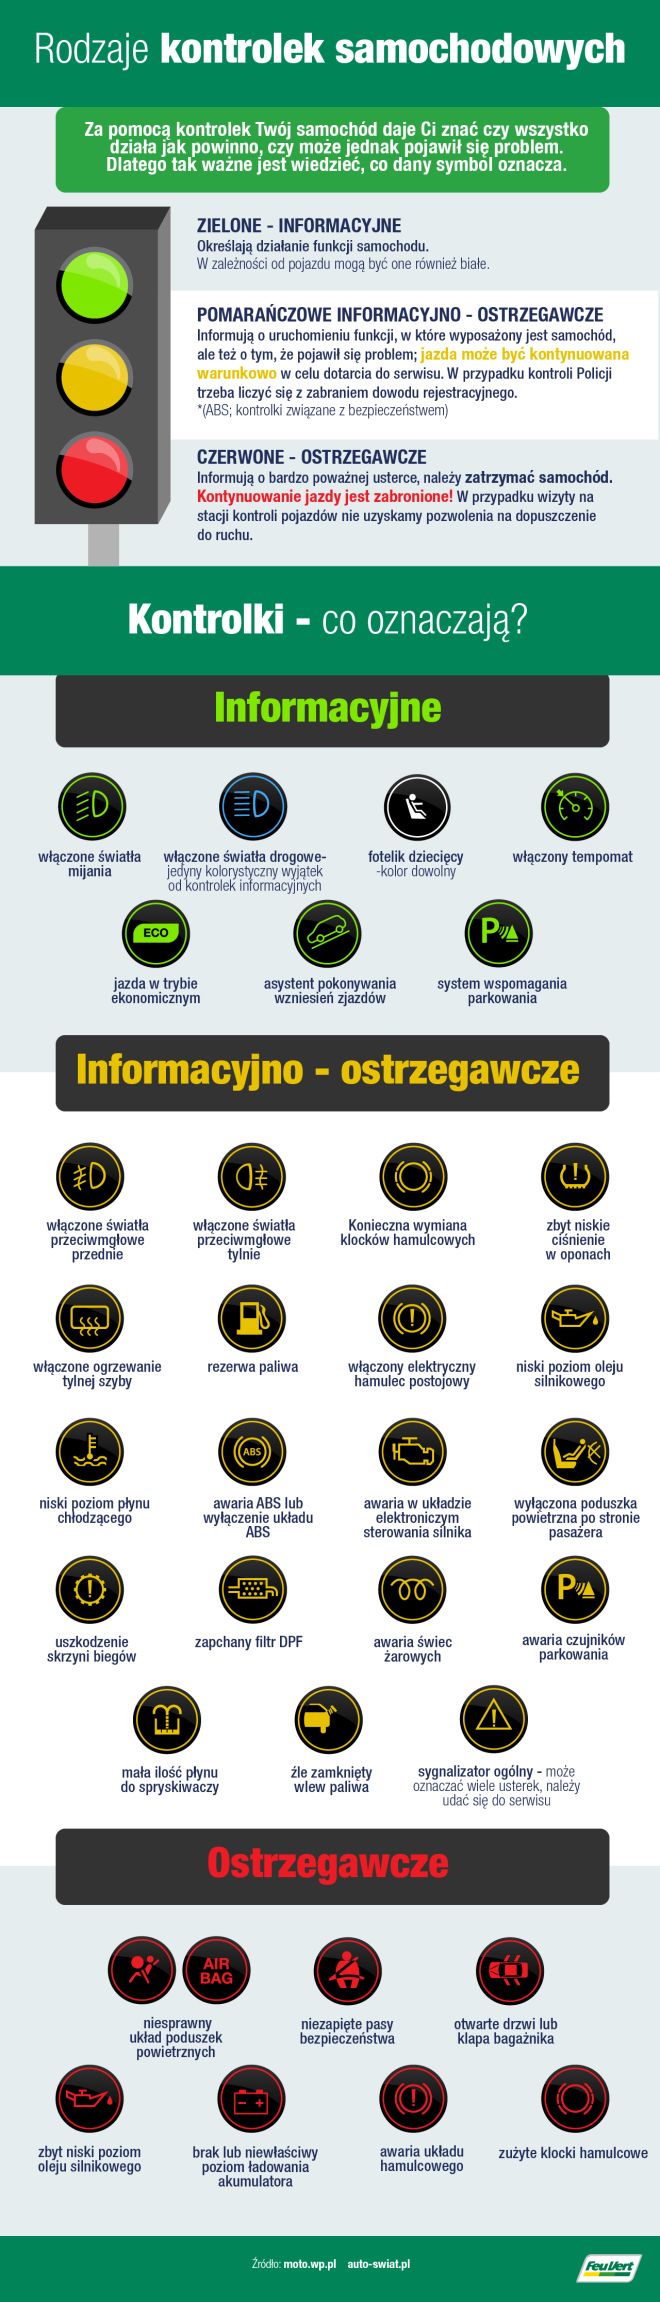 Co Oznaczają Kontrolki W Samochodzie? - Infor.pl